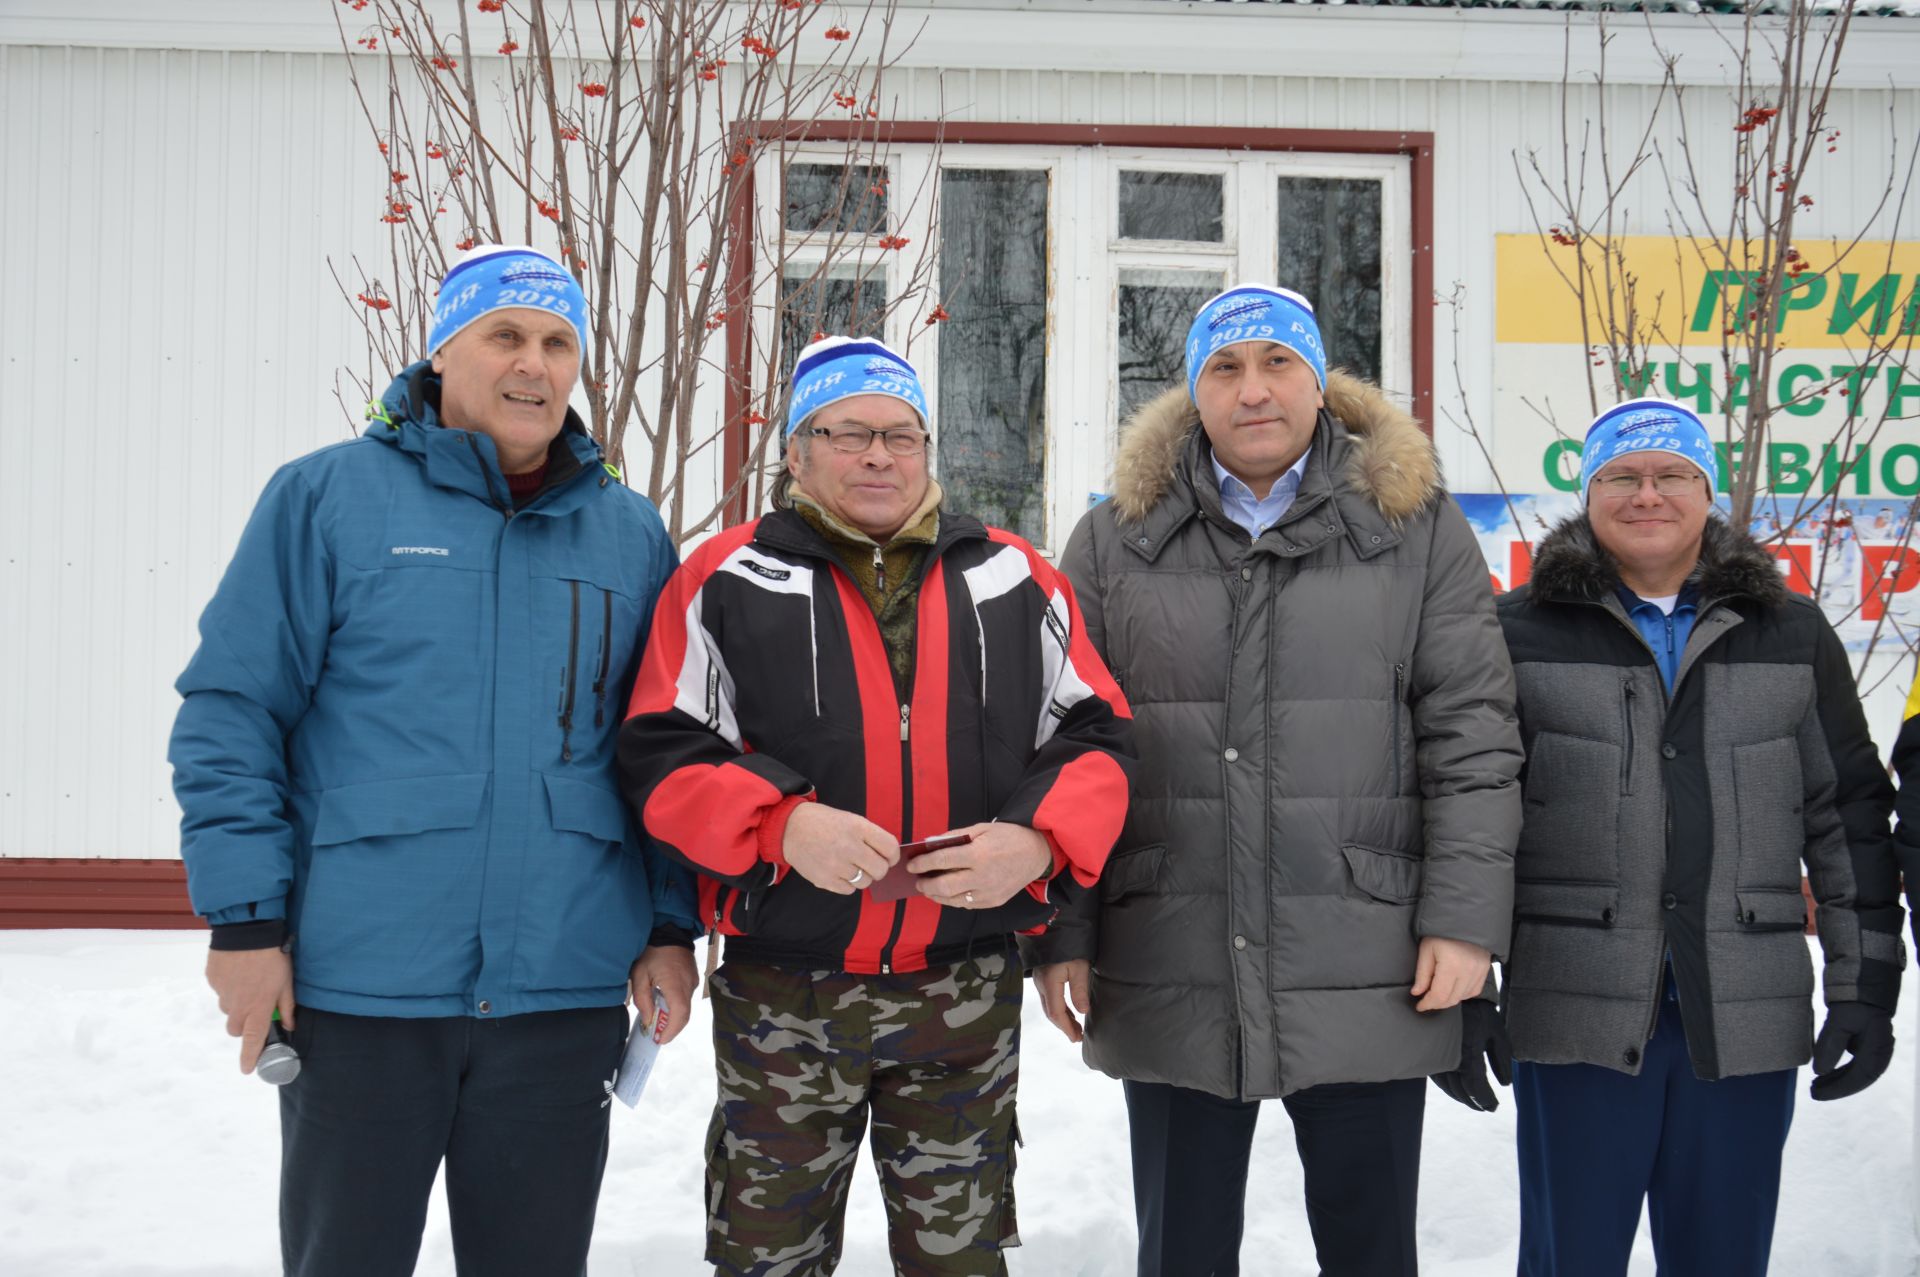 Сегодня в Азнакаево прошли республиканские массовые соревнования «Лыжня Татарстана-2019»